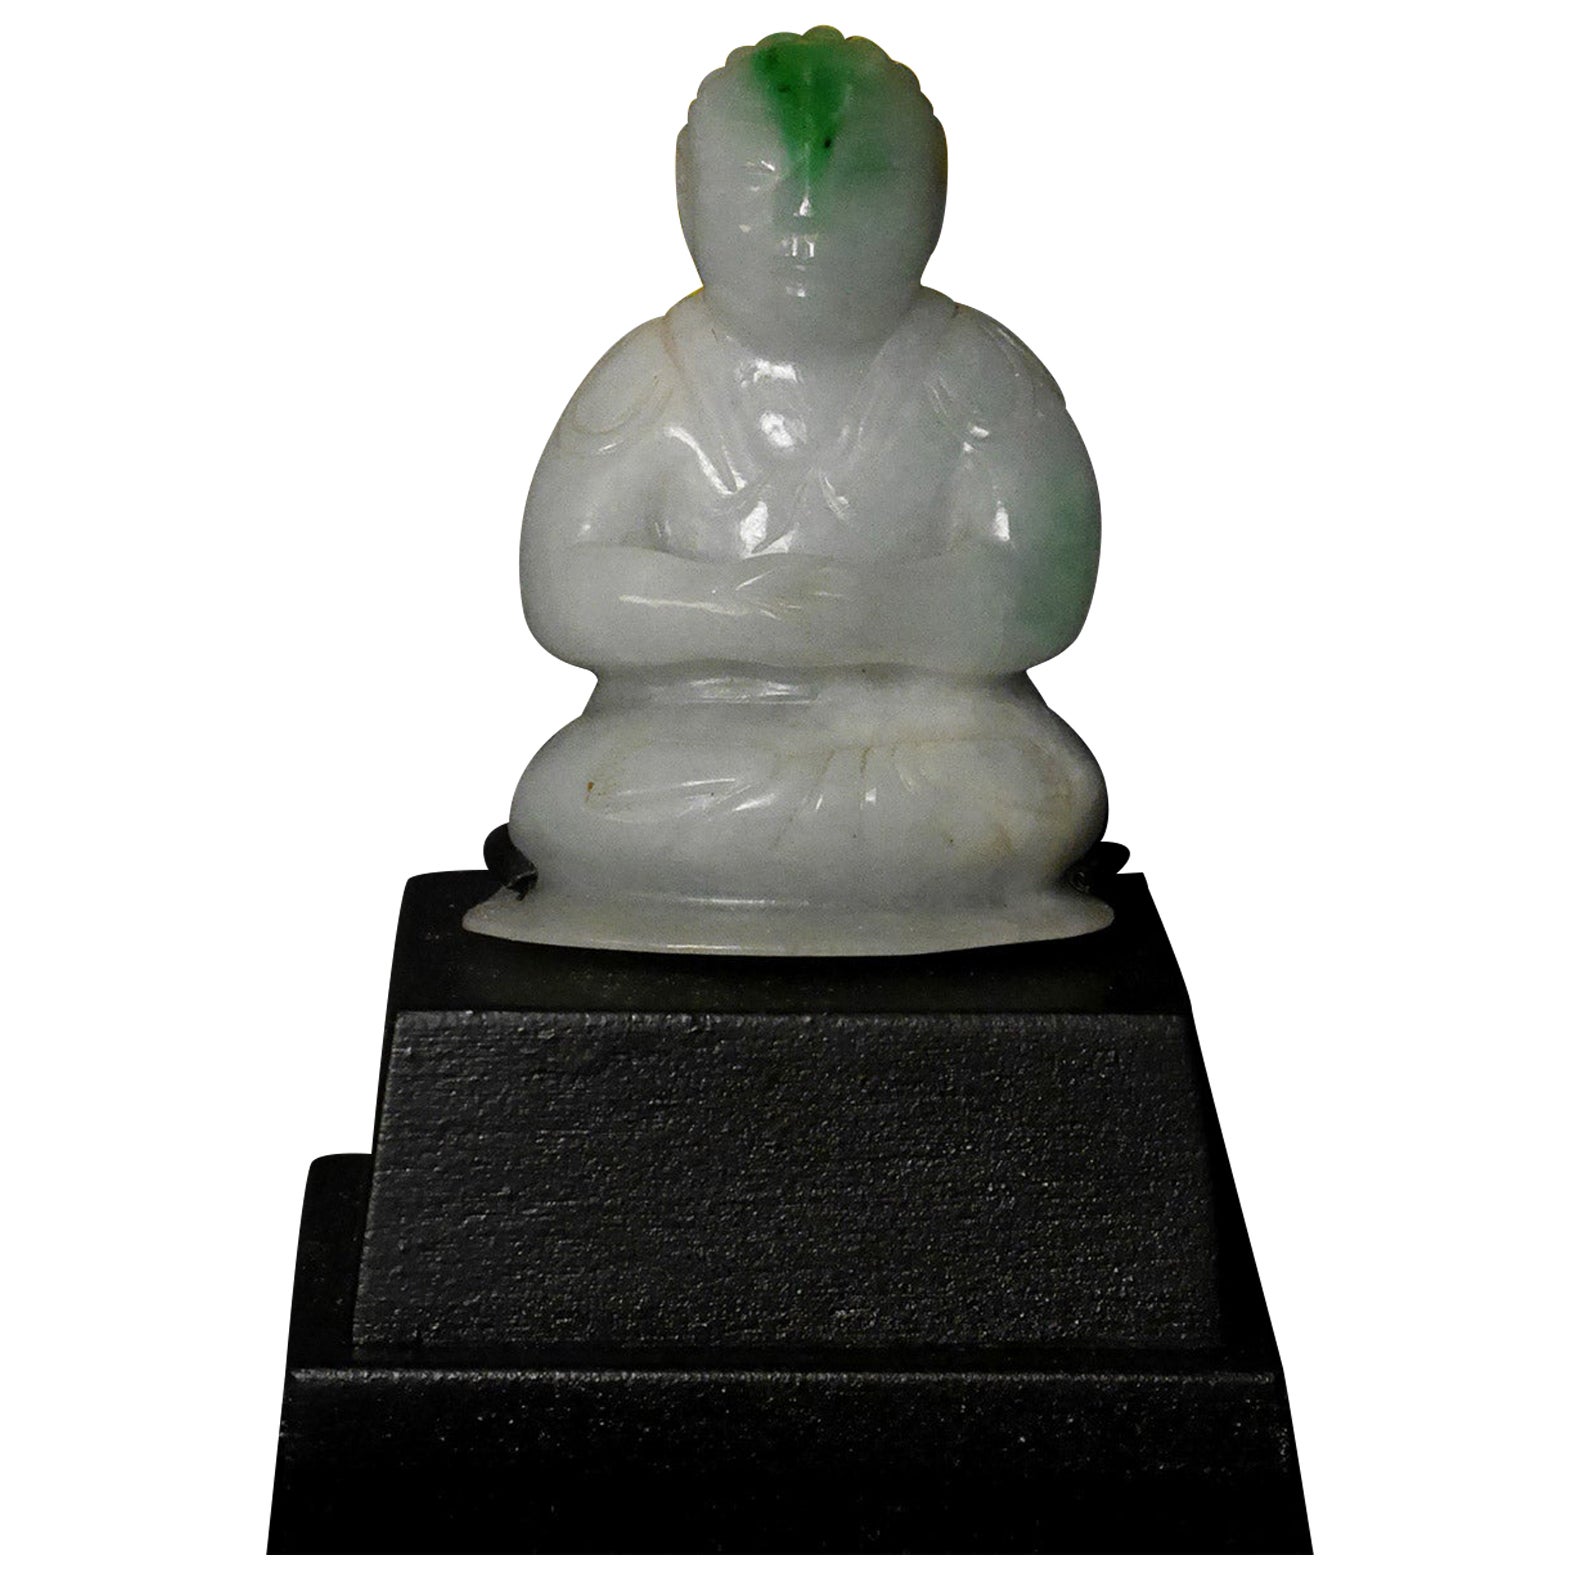 18/19thC Chinese Jadite Jade Buddha, Fine, Special! - 7730